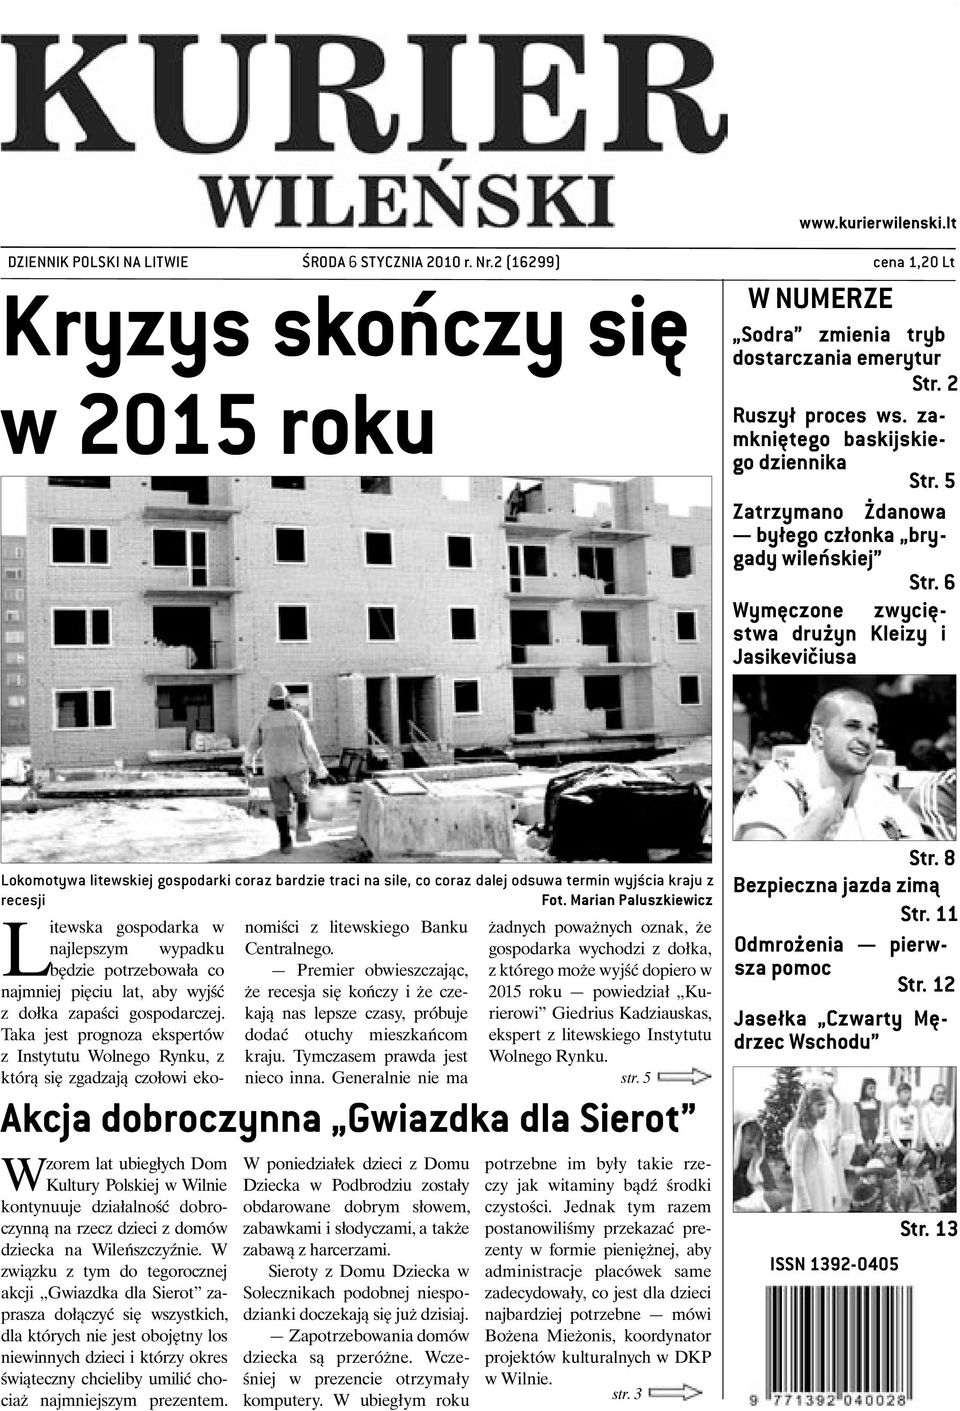 6 Wymęczone zwycięstwa drużyn Kleizy i Jasikevičiusa Lokomotywa litewskiej gospodarki coraz bardzie traci na sile, co coraz dalej odsuwa termin wyjścia kraju z recesji Fot.